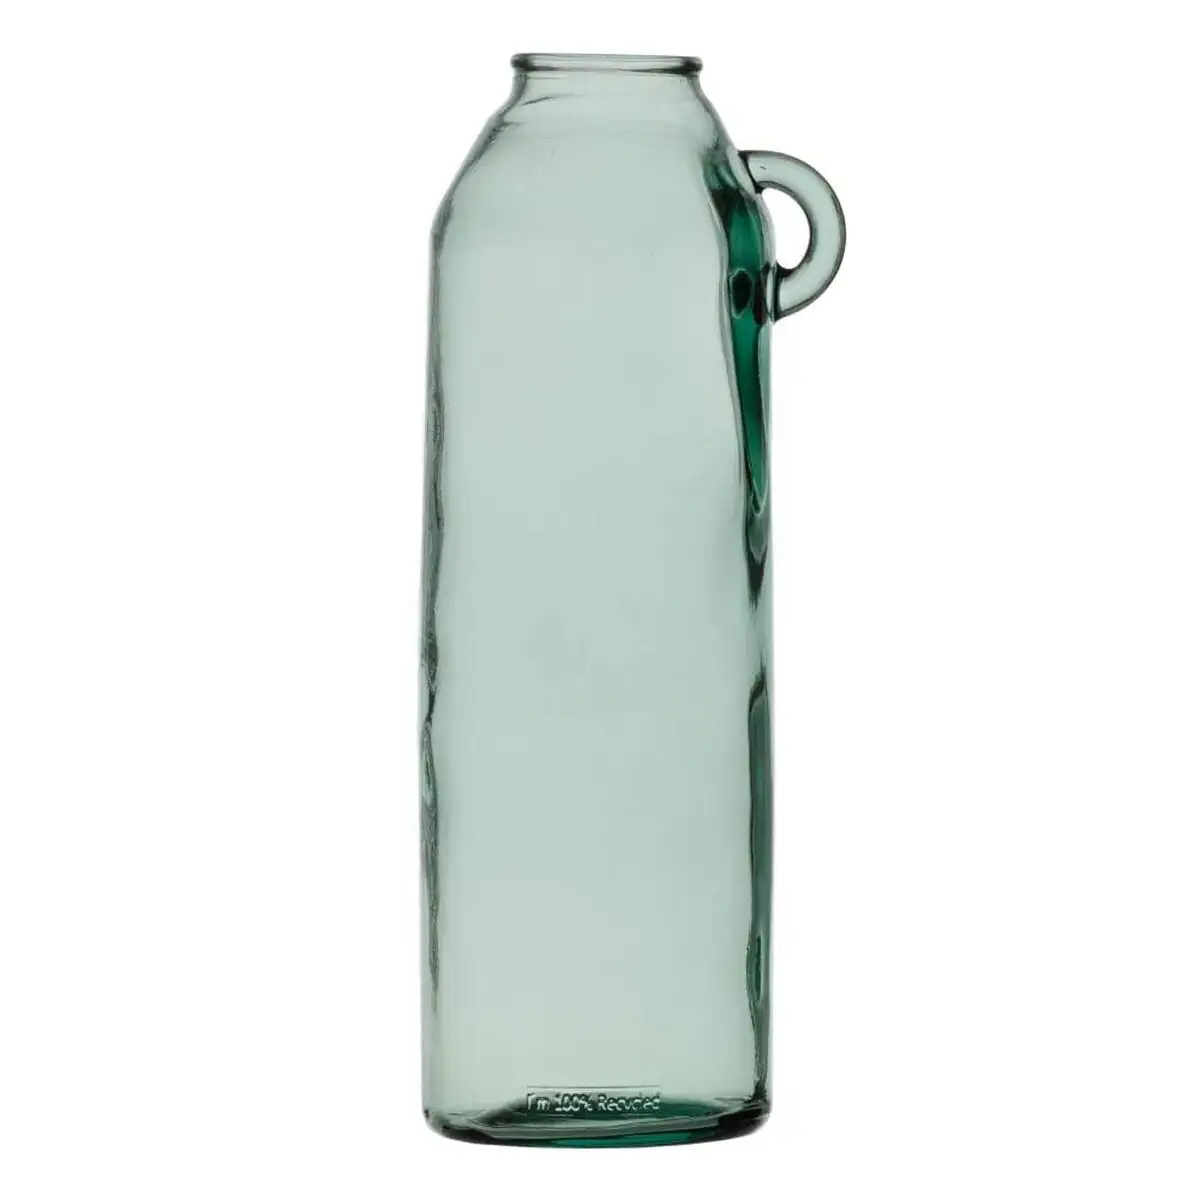 Vase vert verre recycle 17 x 17 x 45 cm_7412. DIAYTAR SENEGAL - Votre Passage vers le Raffinement. Plongez dans notre univers de produits exquis et choisissez des articles qui ajoutent une touche de sophistication à votre vie.